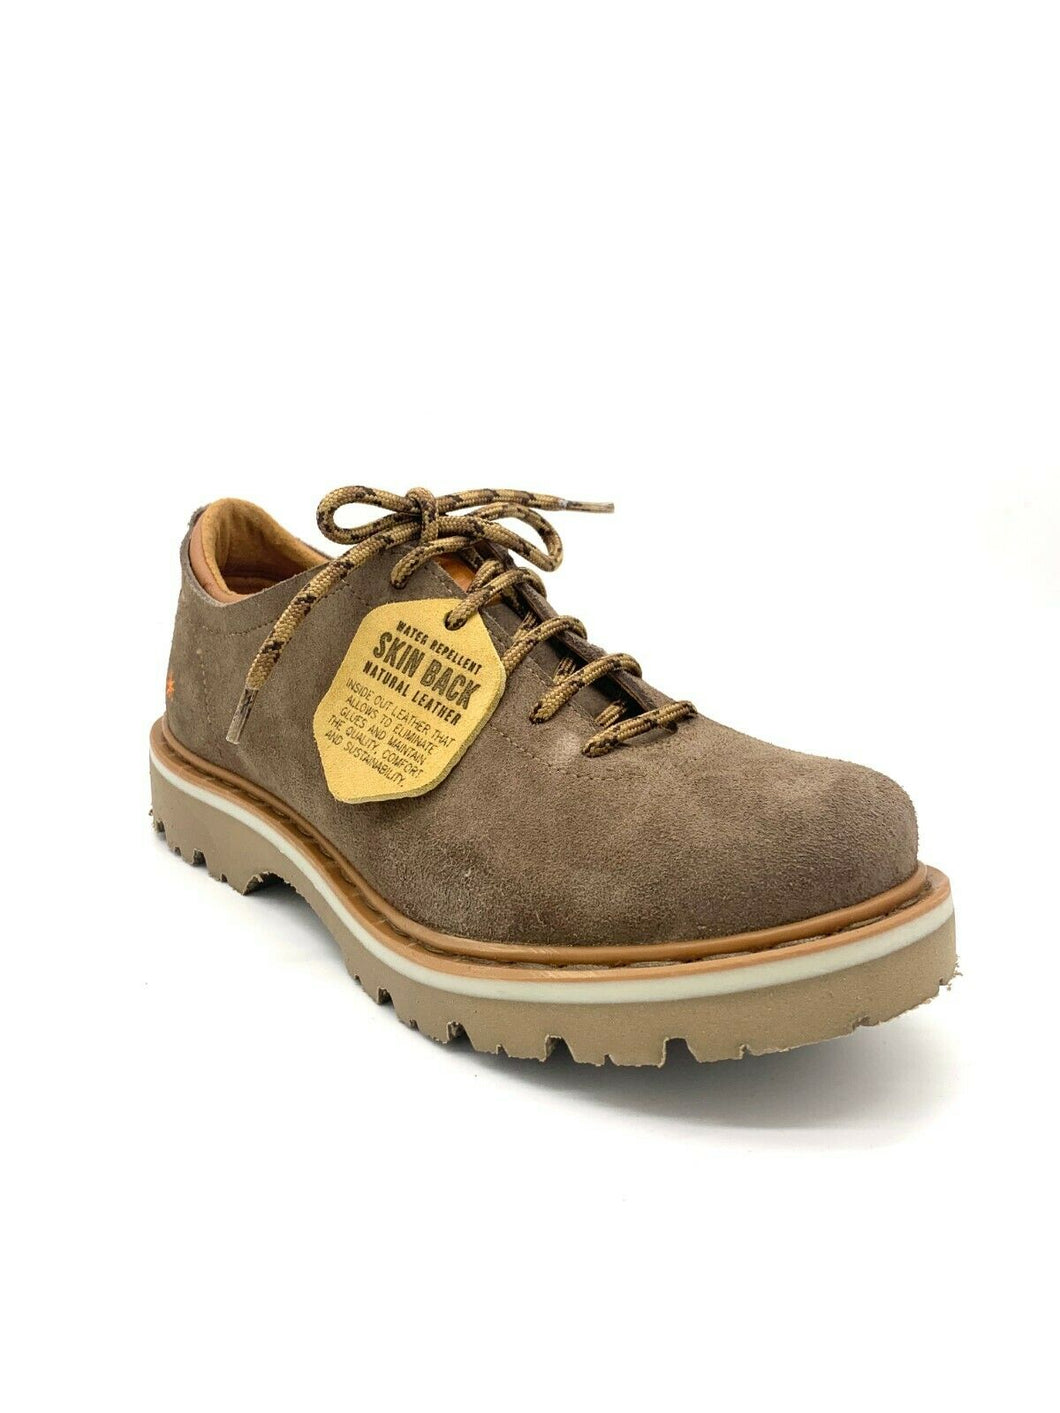 The Art Company Herrenschuhe Schuhe Boots Skin Back 1203 SOMA Made in Spain